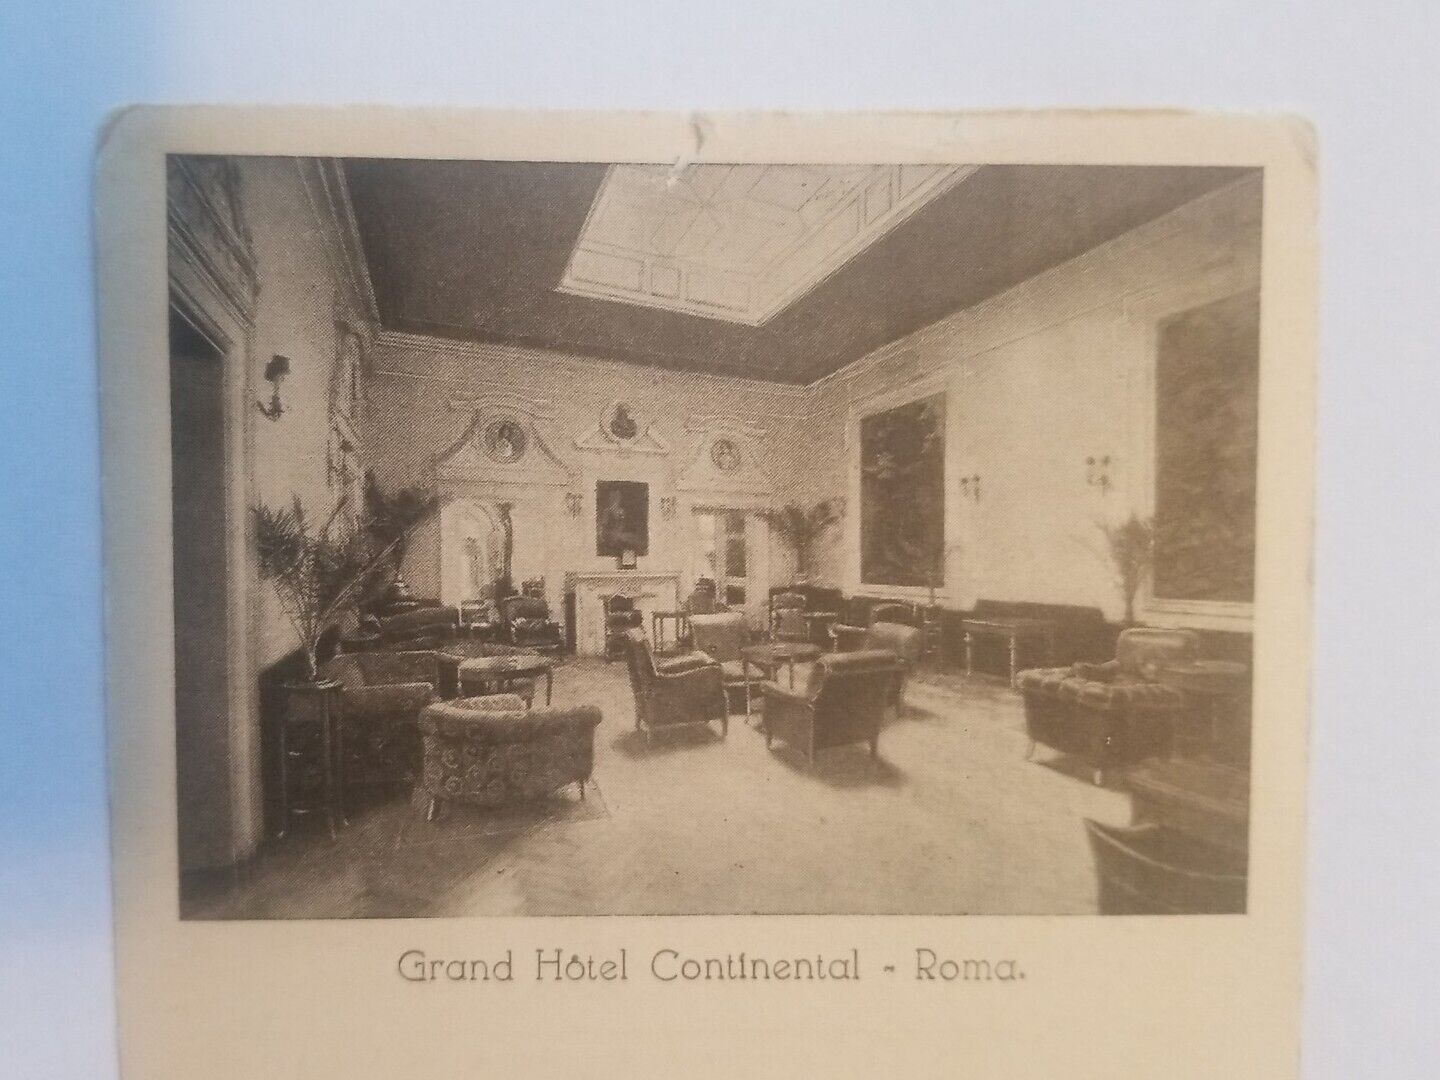 ANTIQUE PRE-WWI Grand Hotel Continental in Rome Postcard RPPC Unposted 1907 era